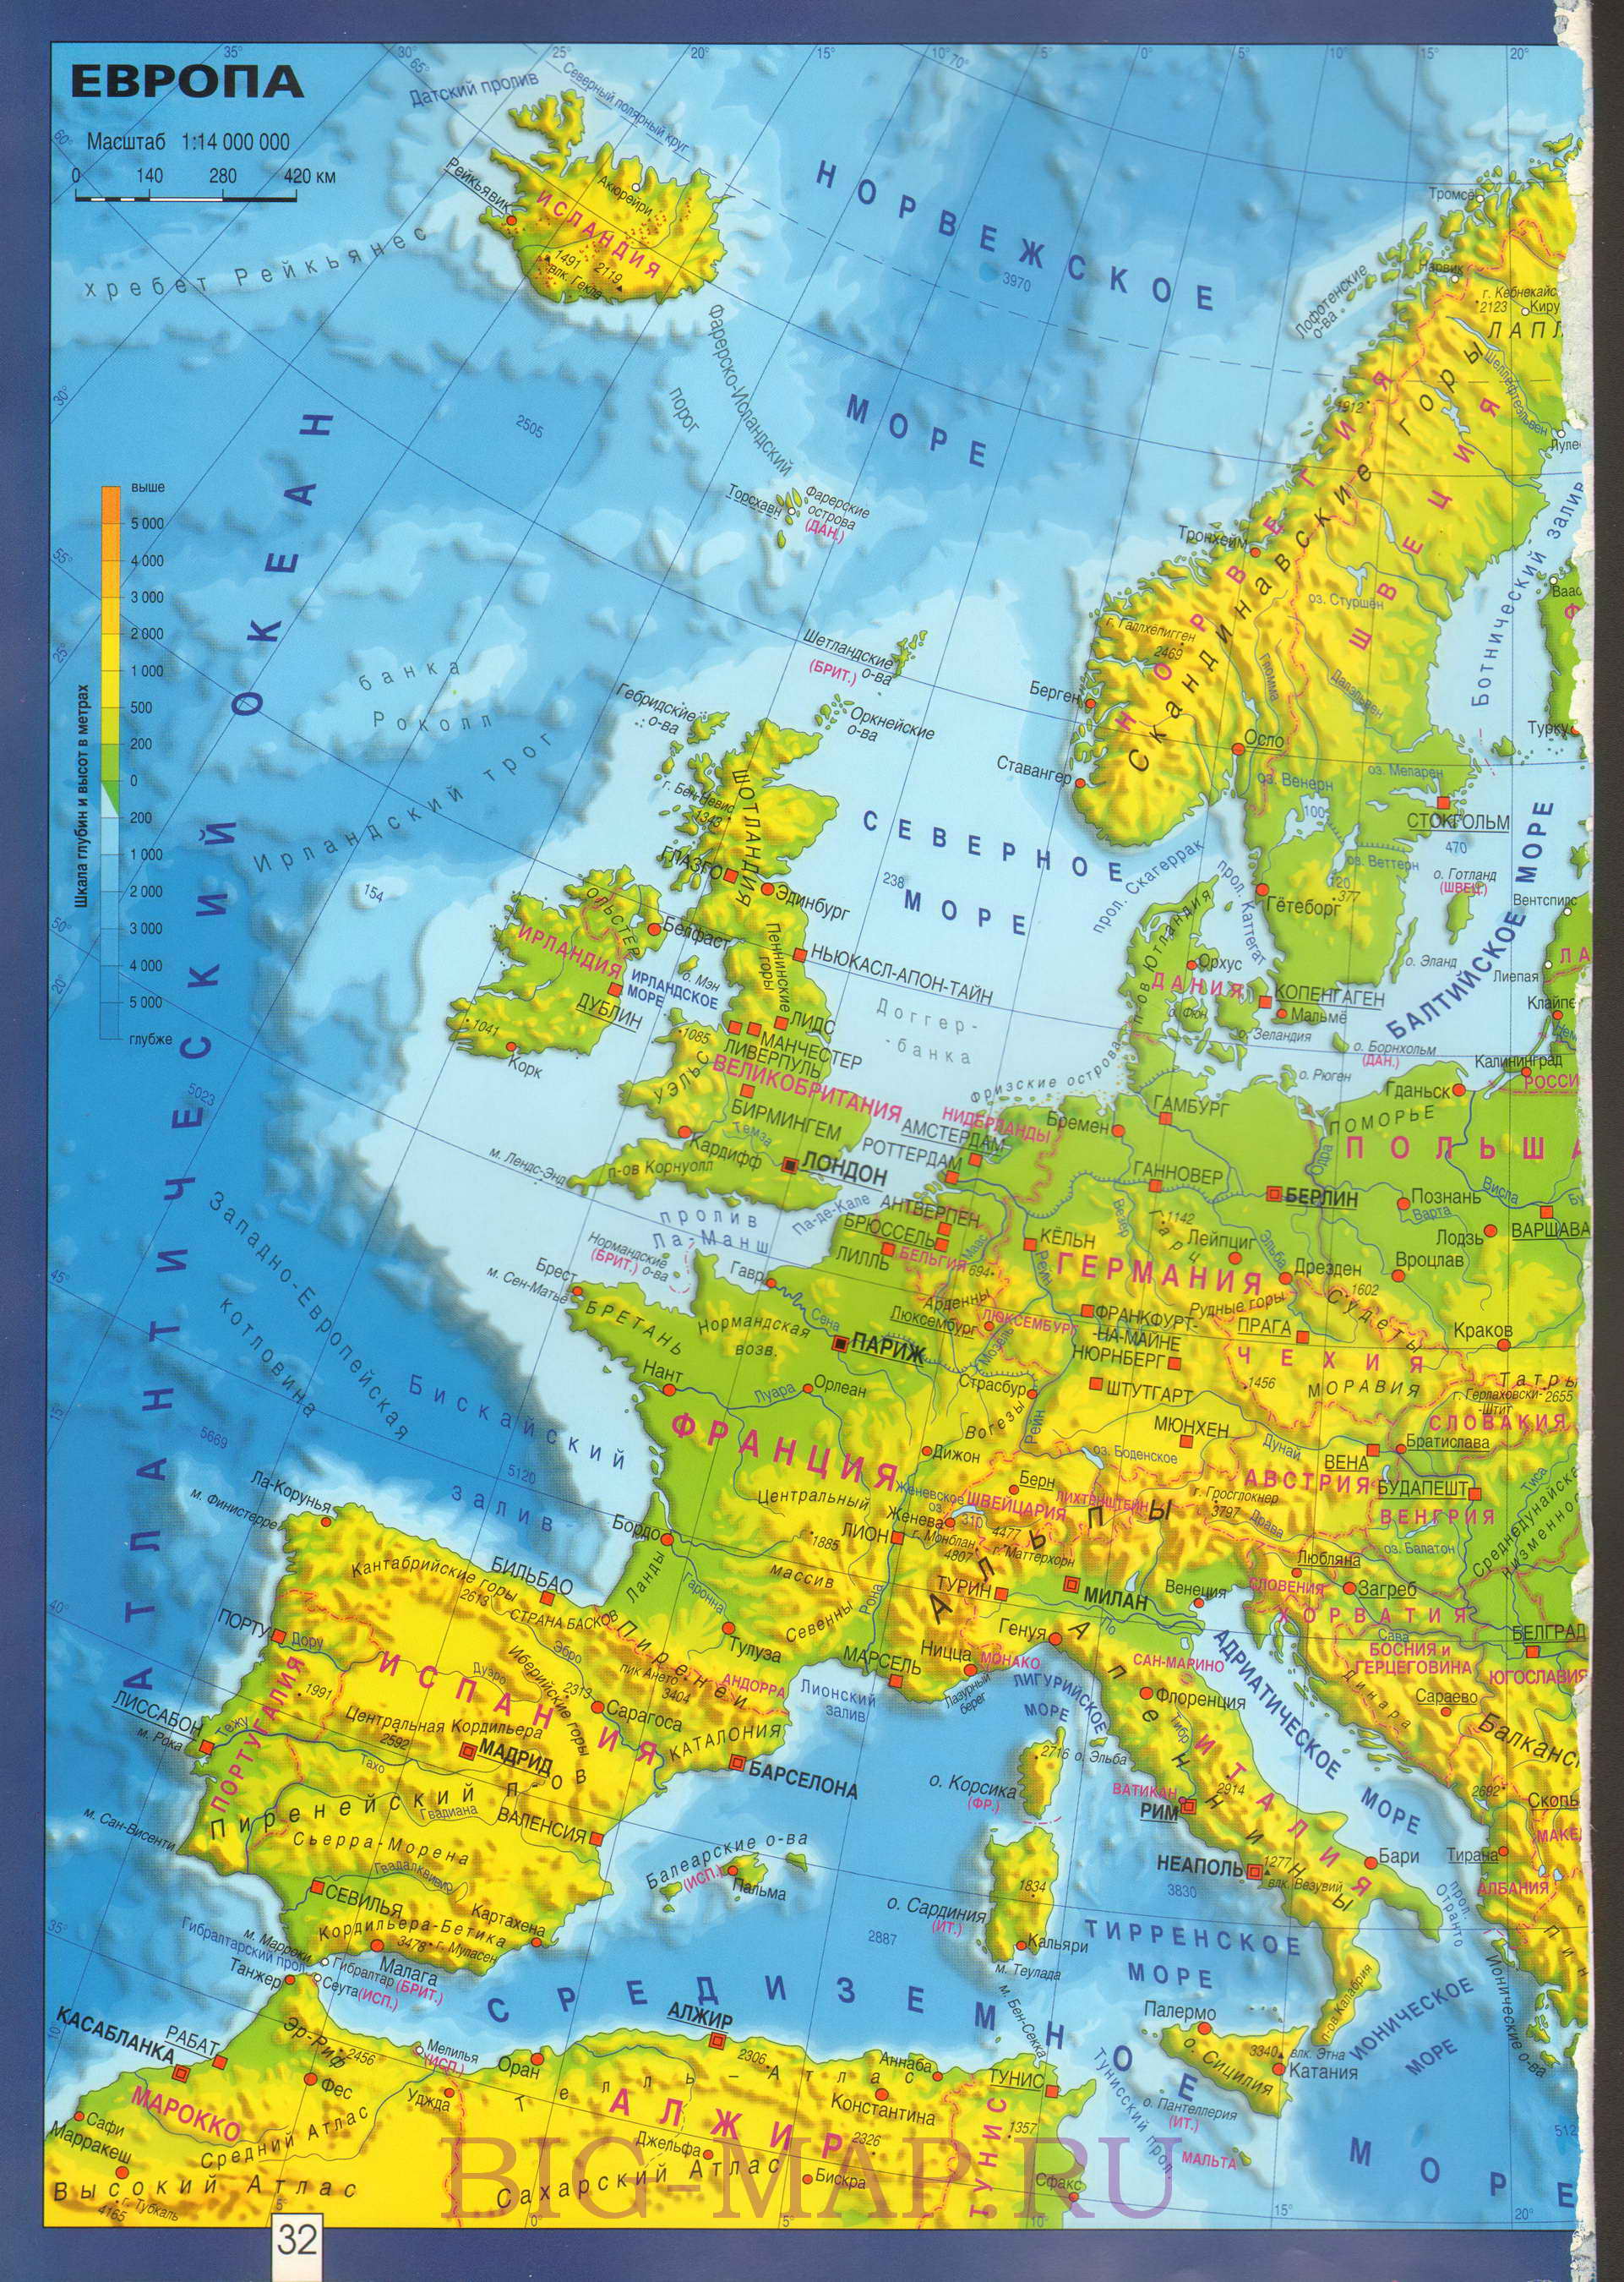  Карта Европы географическая. Подробная географическая карта Европы на русском языке, A0 - 